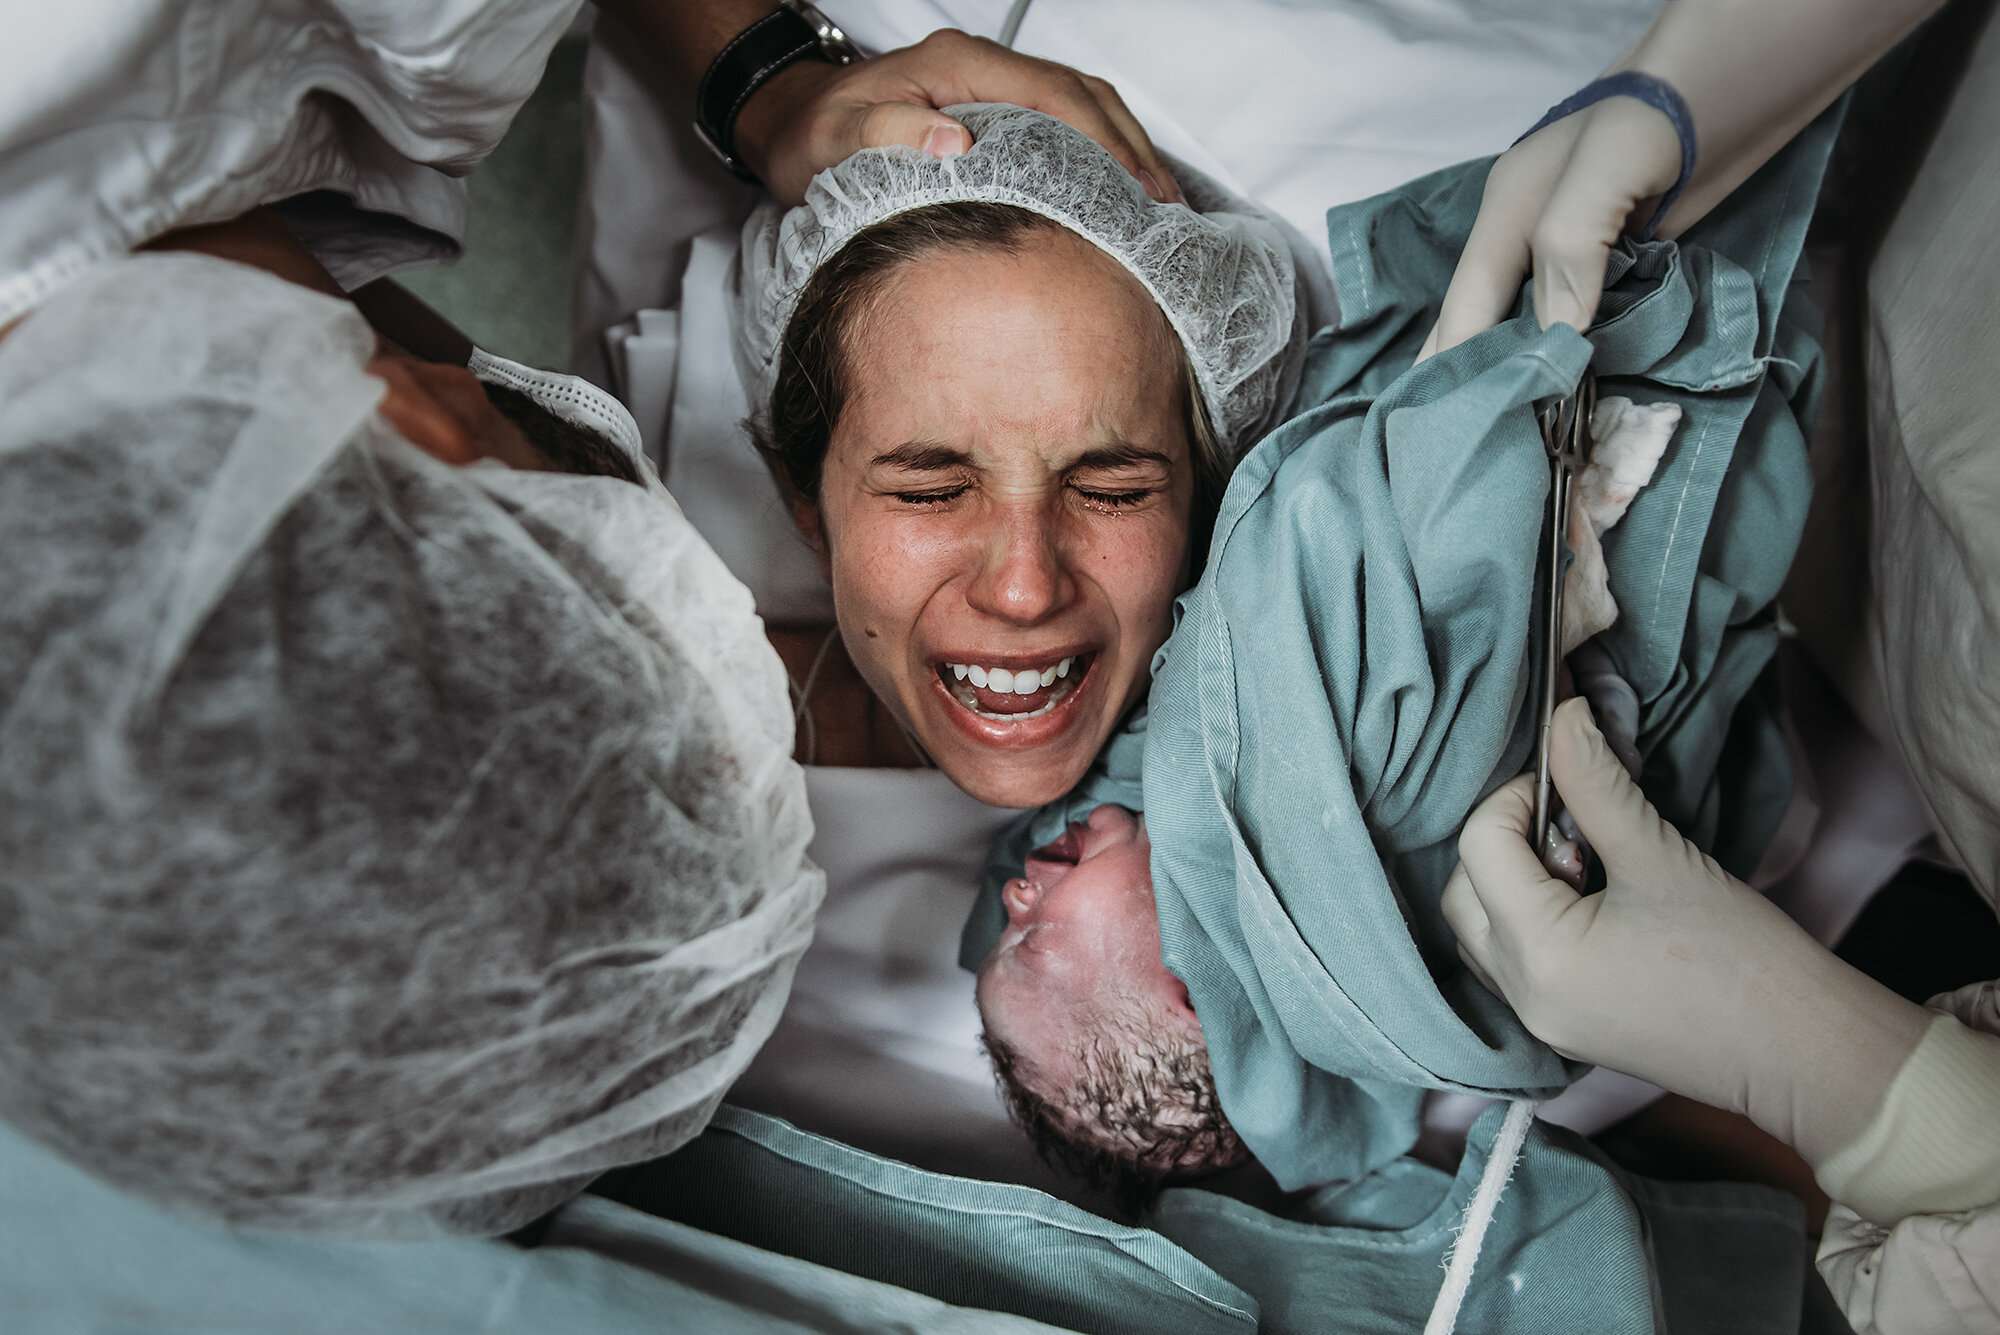 Tunnetta täynnä oleva välähdys keisarileikkauksesta, kun vastasyntynyt lapsi nostetaan ensi kertaa äidin kasvojen lähelle. Kuva: Deborah Elenter, kaikki artikkelin kuvat käytössä Birth Becomes Her -verkkosivuston luvalla.